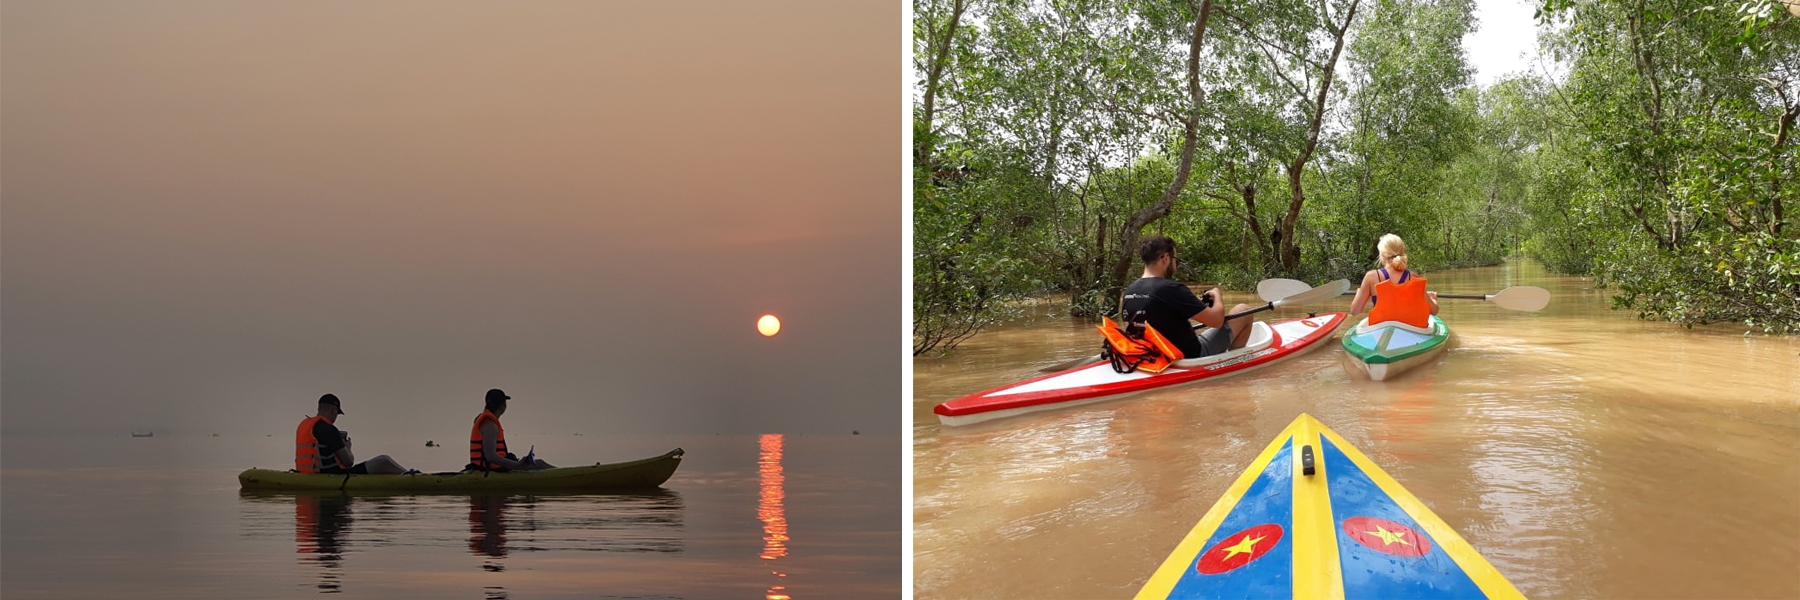 Bike, boat & kayak the Mekong Two days